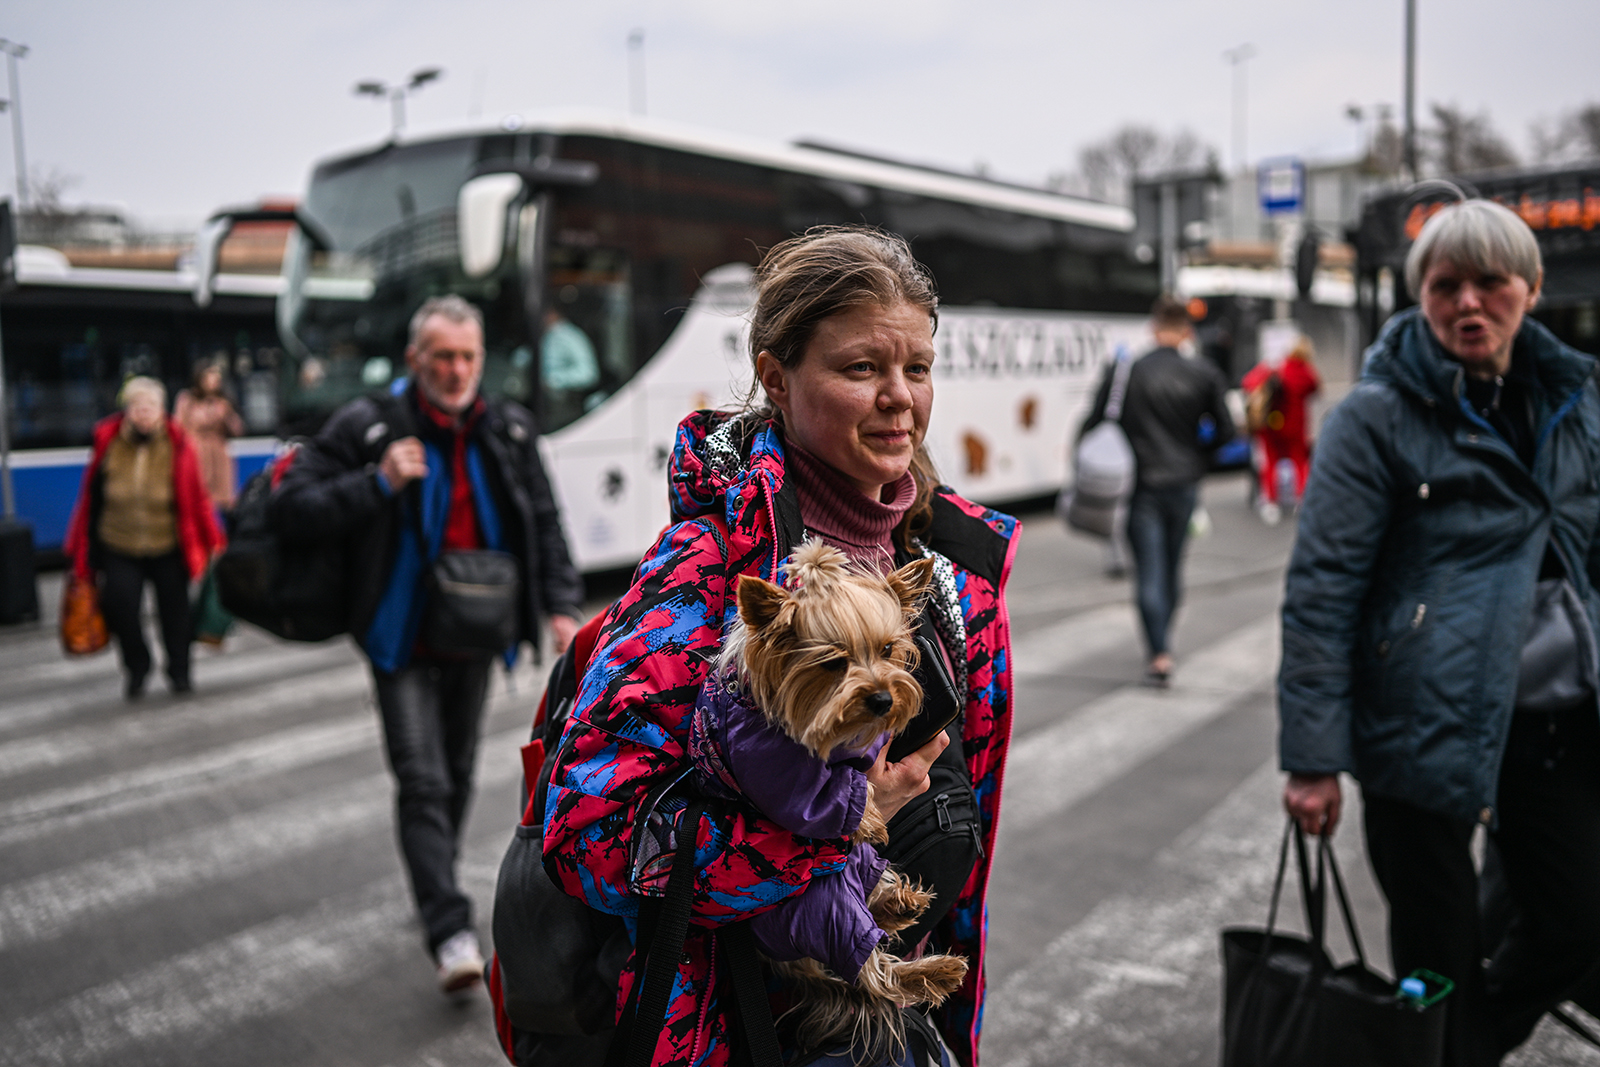 逃离乌克兰的人们于 3 月 29 日乘坐公共汽车从普热梅希尔抵达波兰克拉科夫。